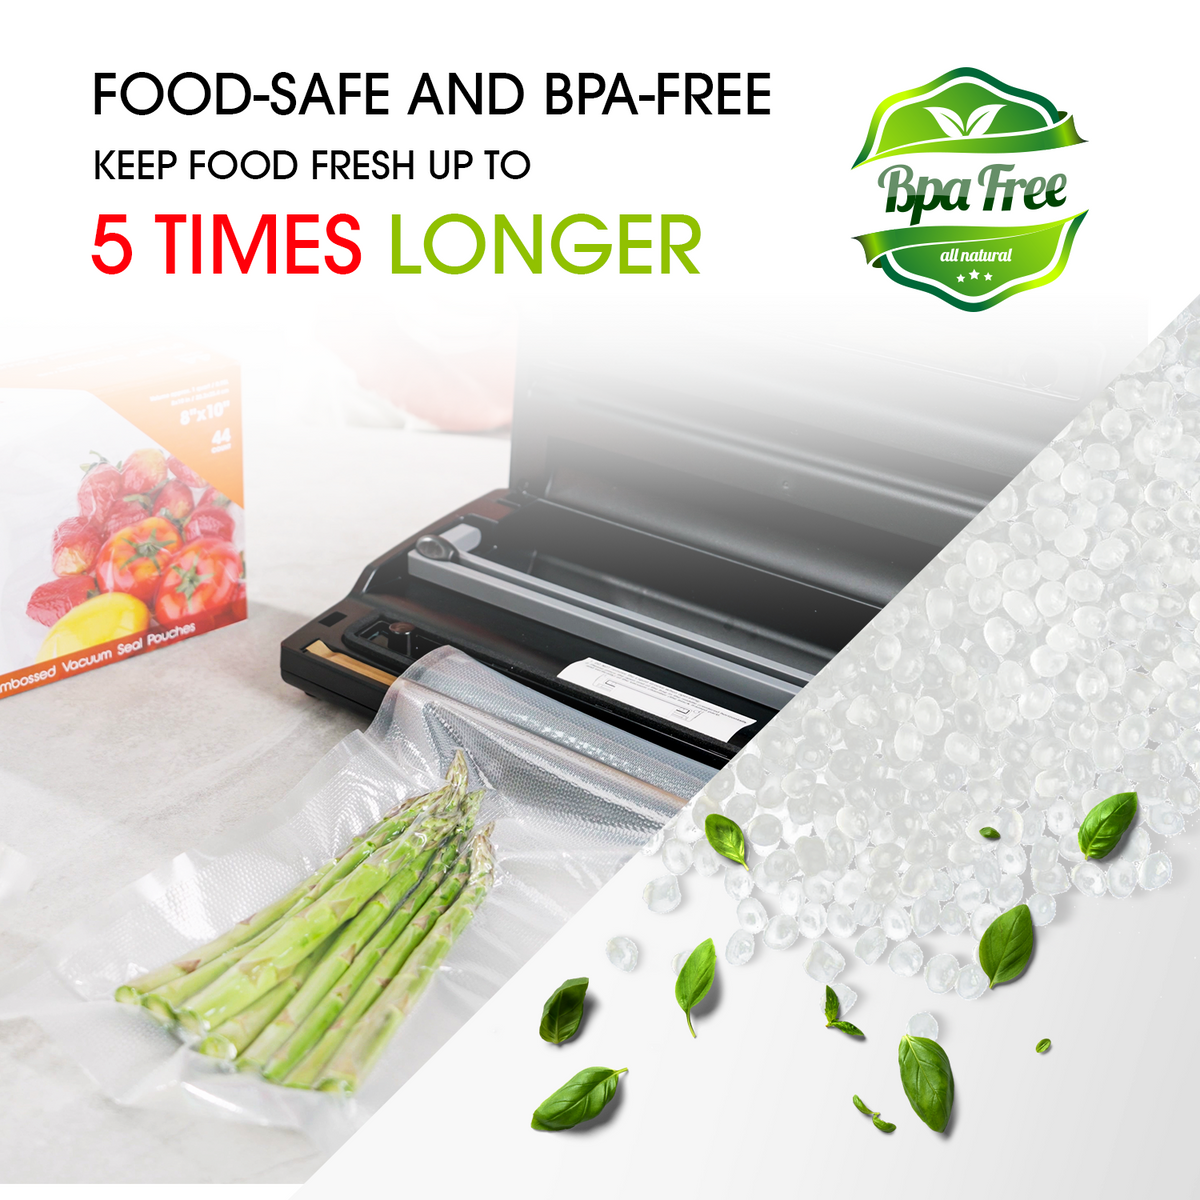 FoodSaver Food Saver Vacuum Sealer Bag Roll Combo Precut Bags Value Pack  BPA FRE